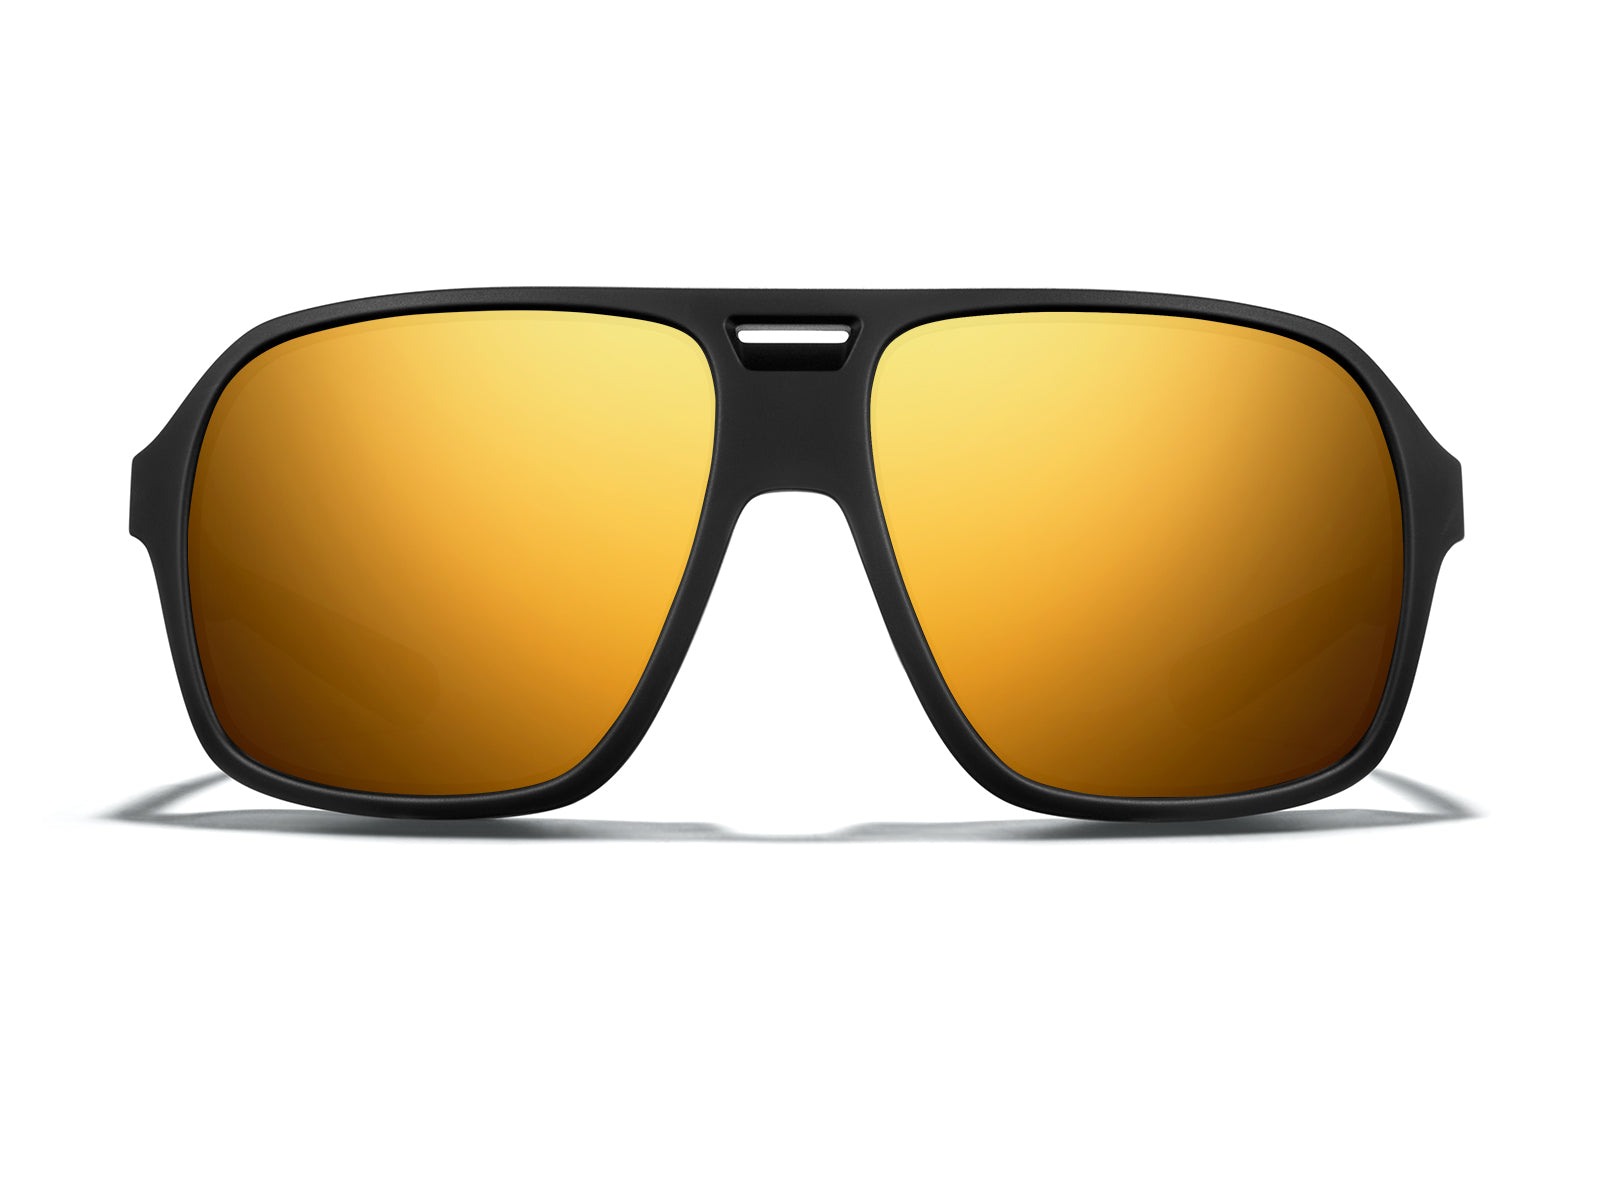 Torino Aviator Sunglasses in Yellow Gold